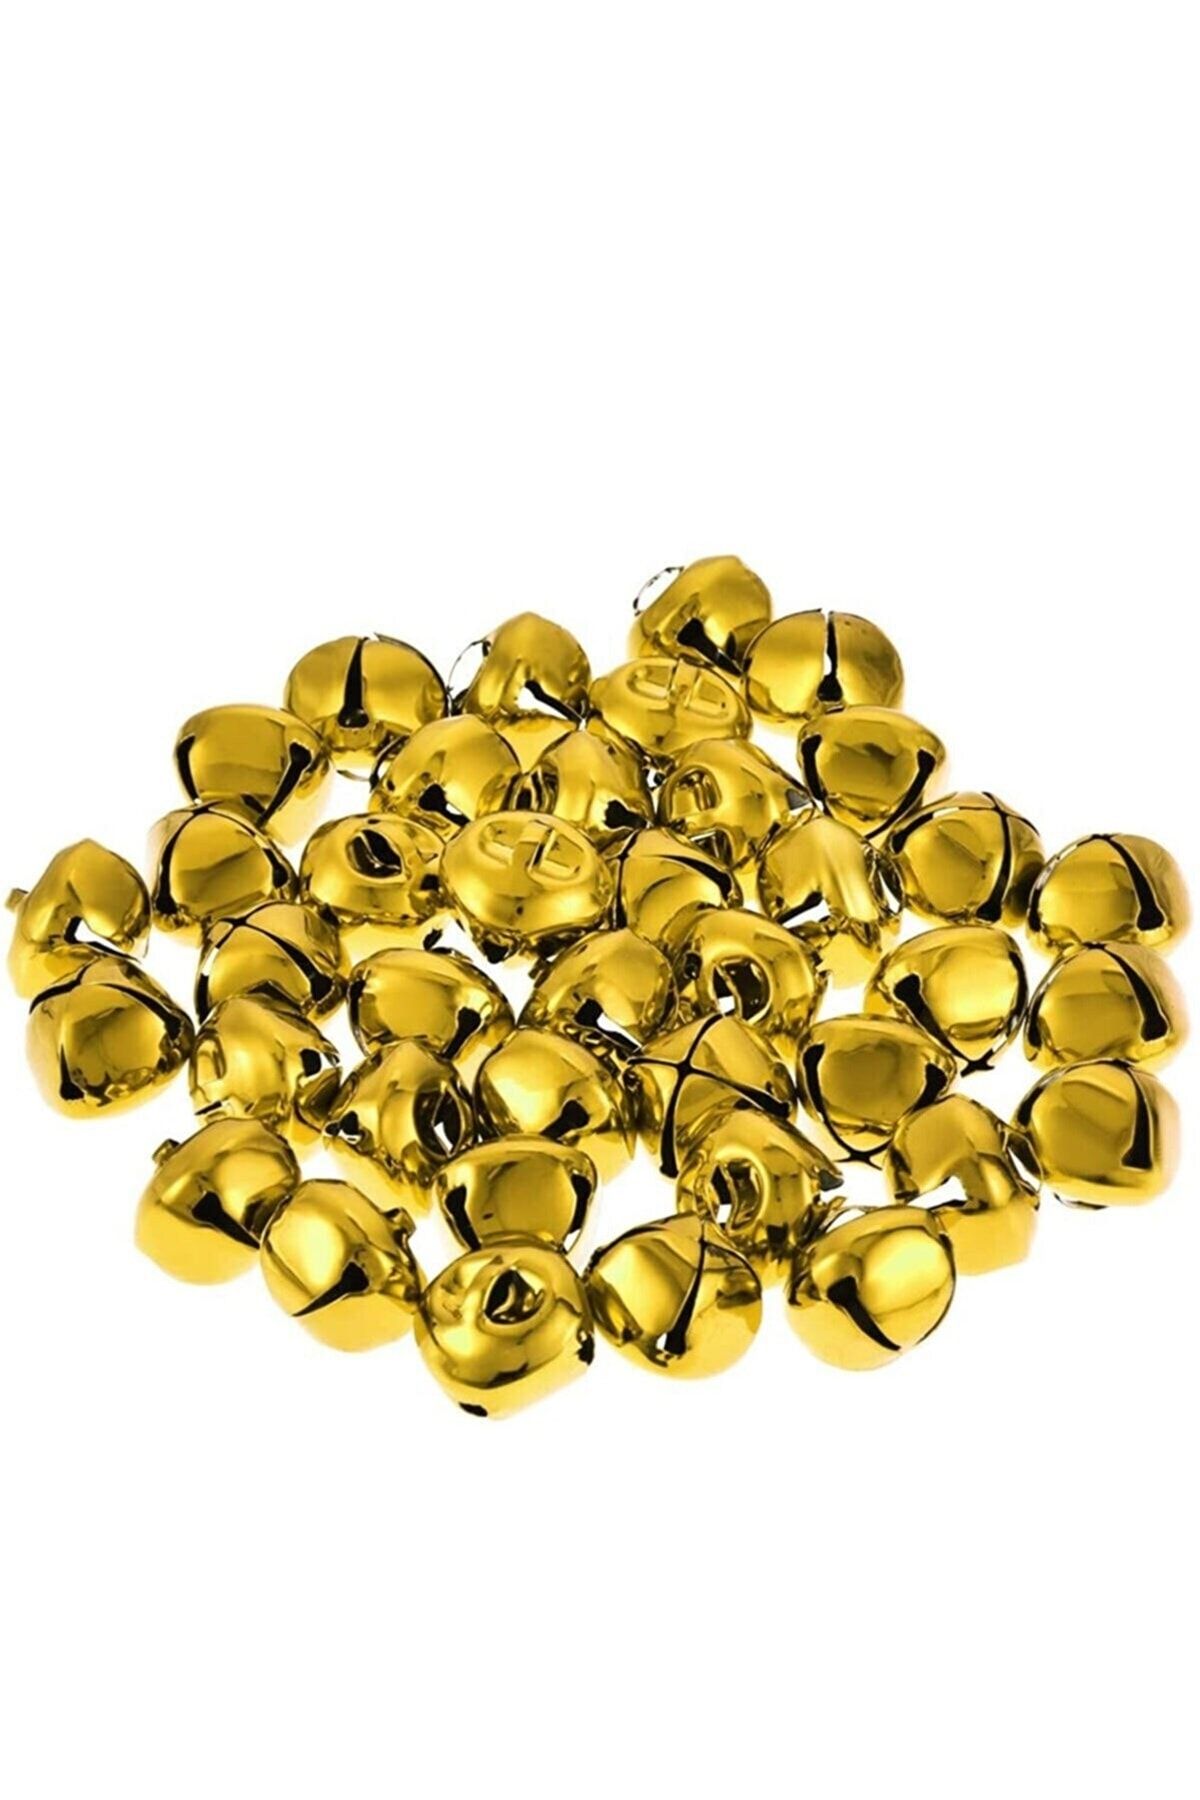 RoseRoi Süsleme Malzemesi 2cm Metal Çıngırak Zil Altın Rengi 20 Li Paket